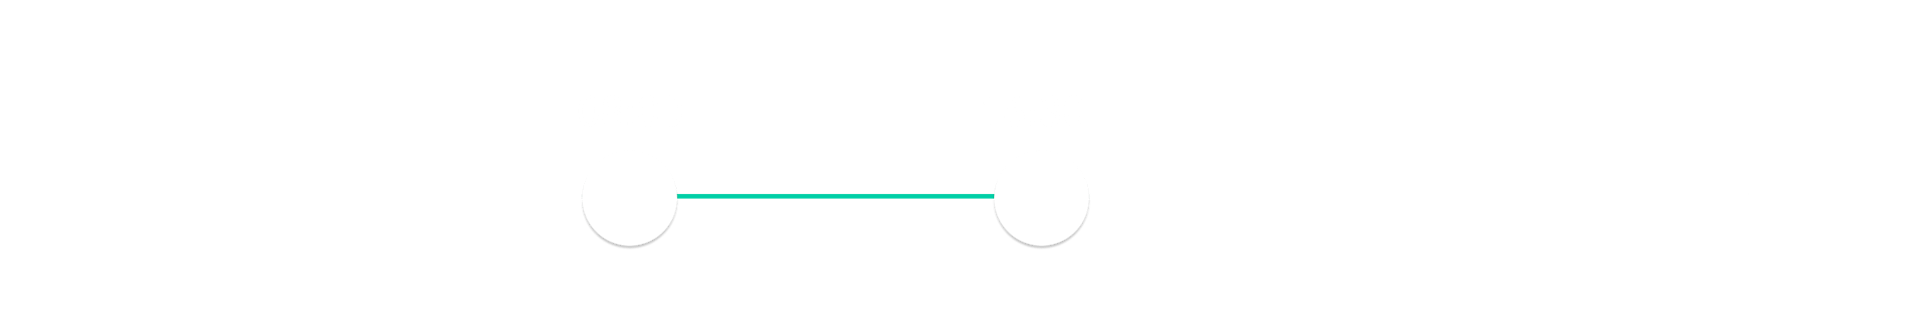 Sensibo - Scheduling - Timeframe image (white)